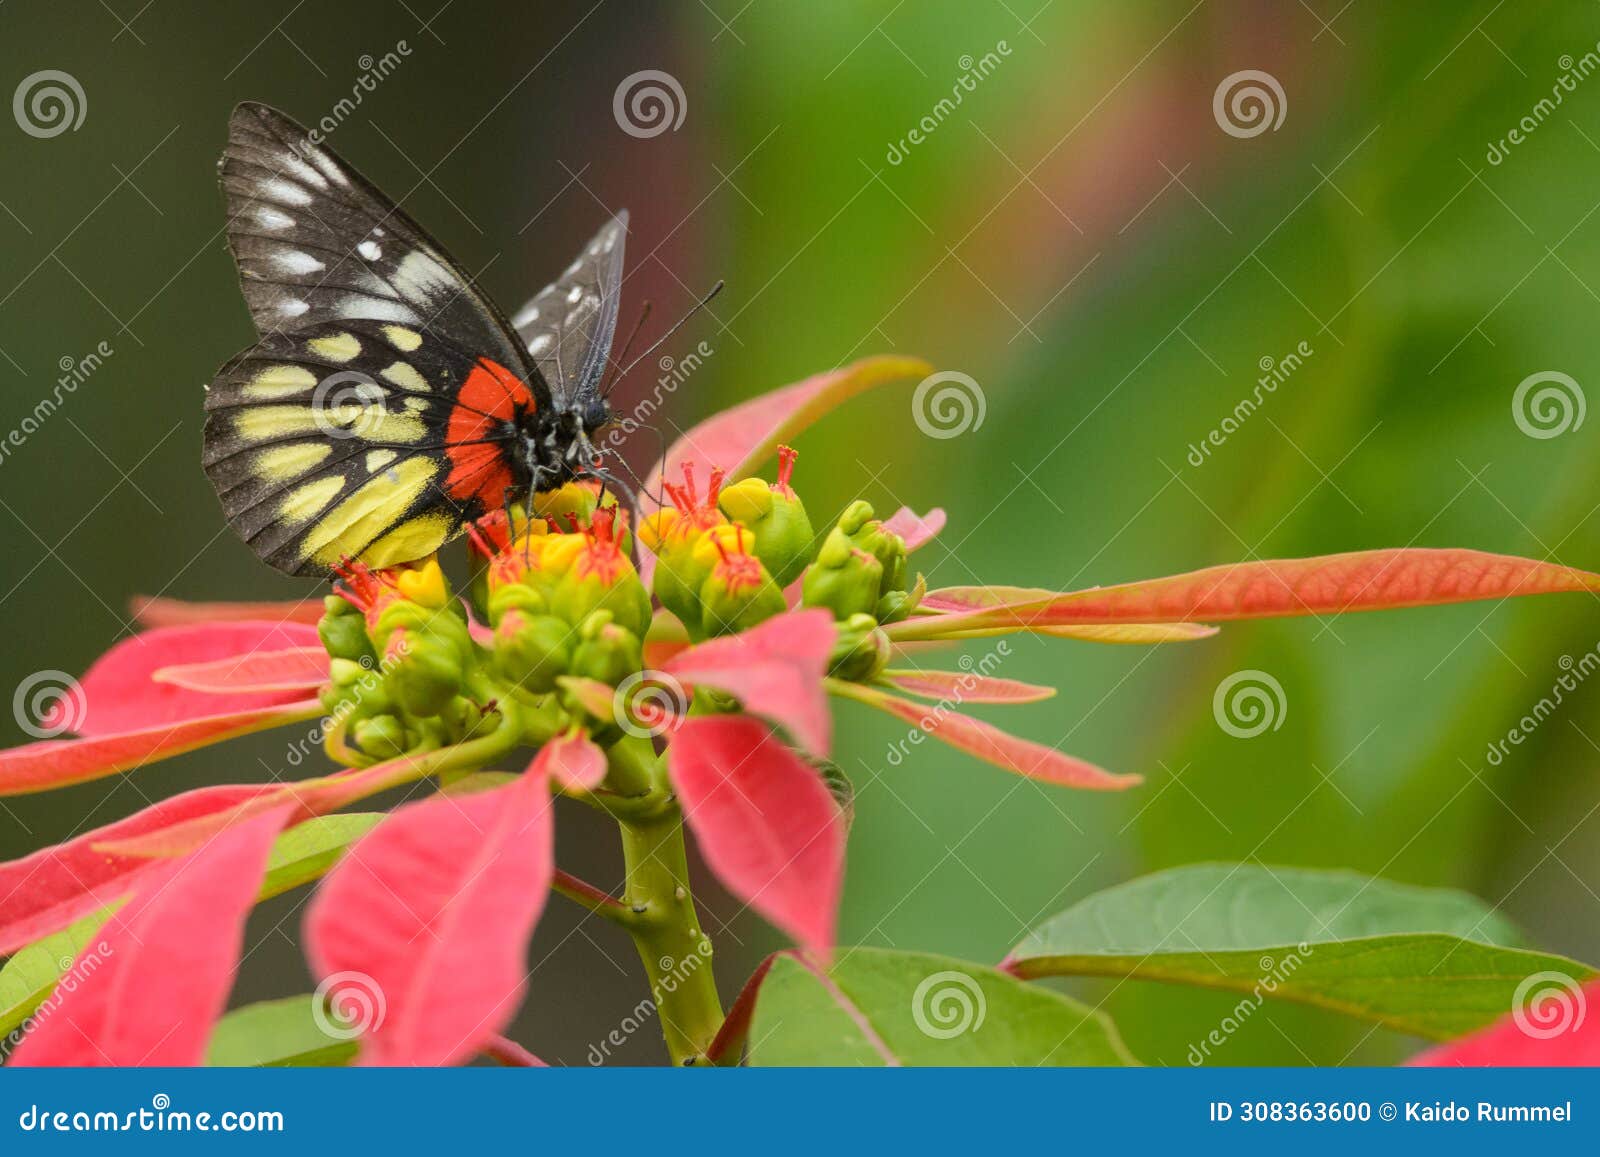 redbase jezebel butterfly in taiwan